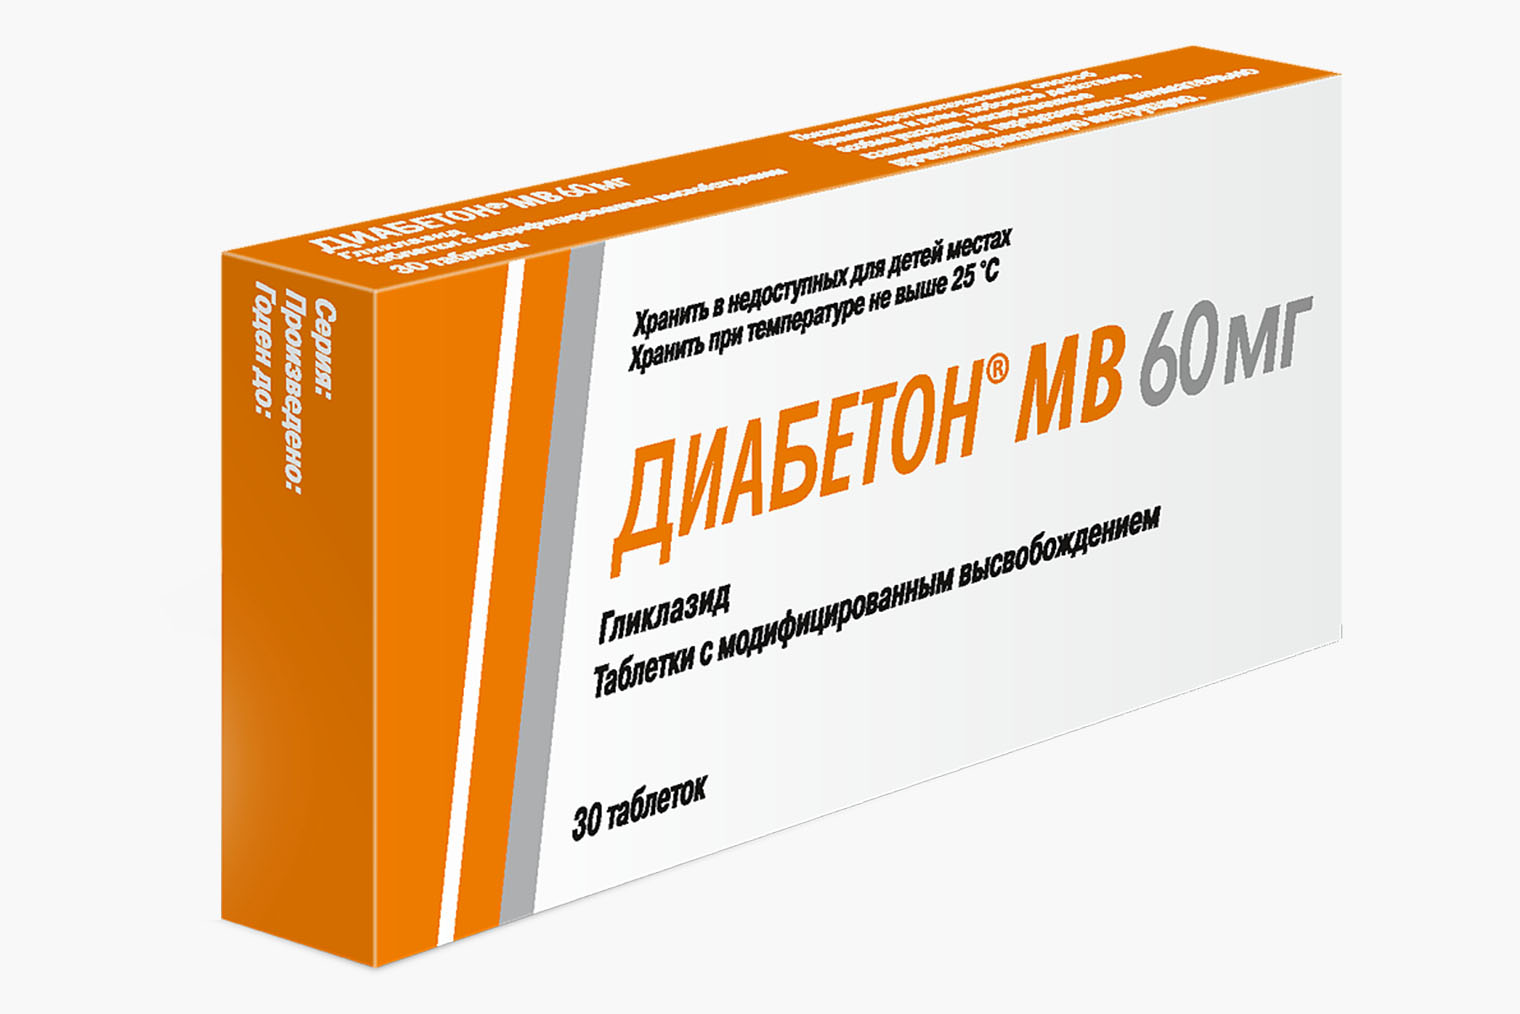 Оригинальный препарат с гликлазидом. Источник: eapteka.ru